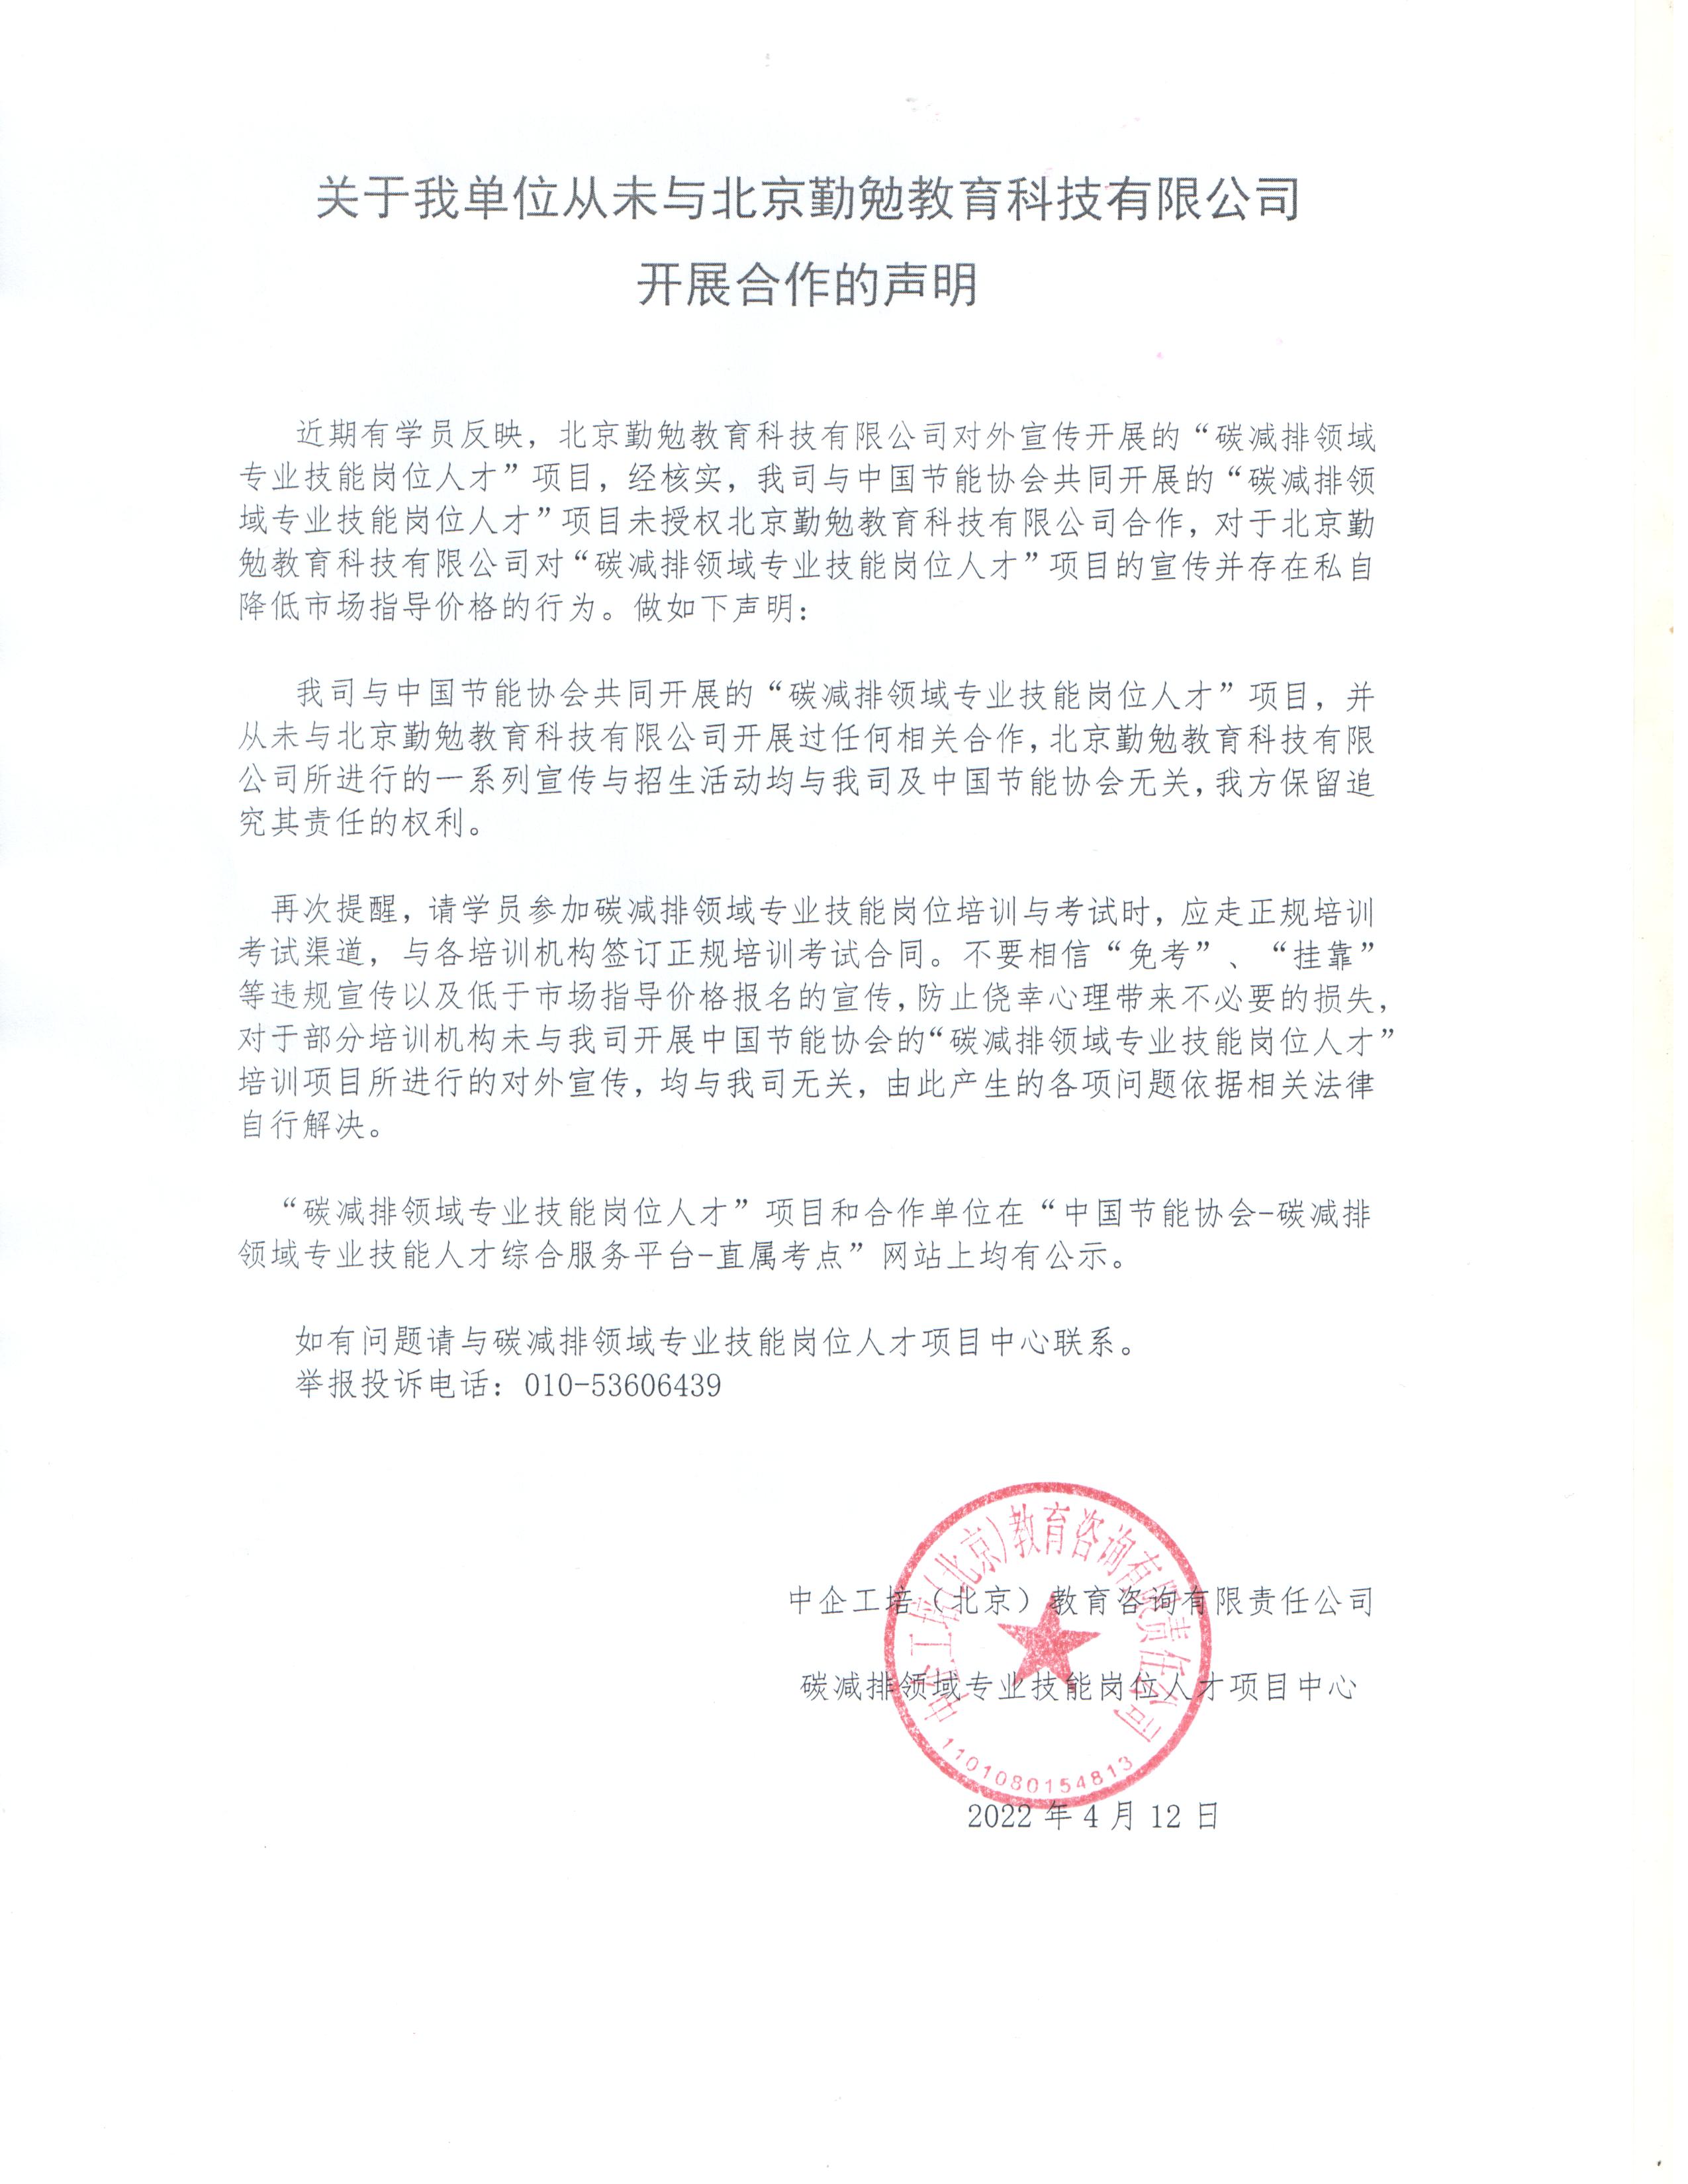 关于我单位从未与北京勤勉教育科技有限公司开展合作的声明.jpg